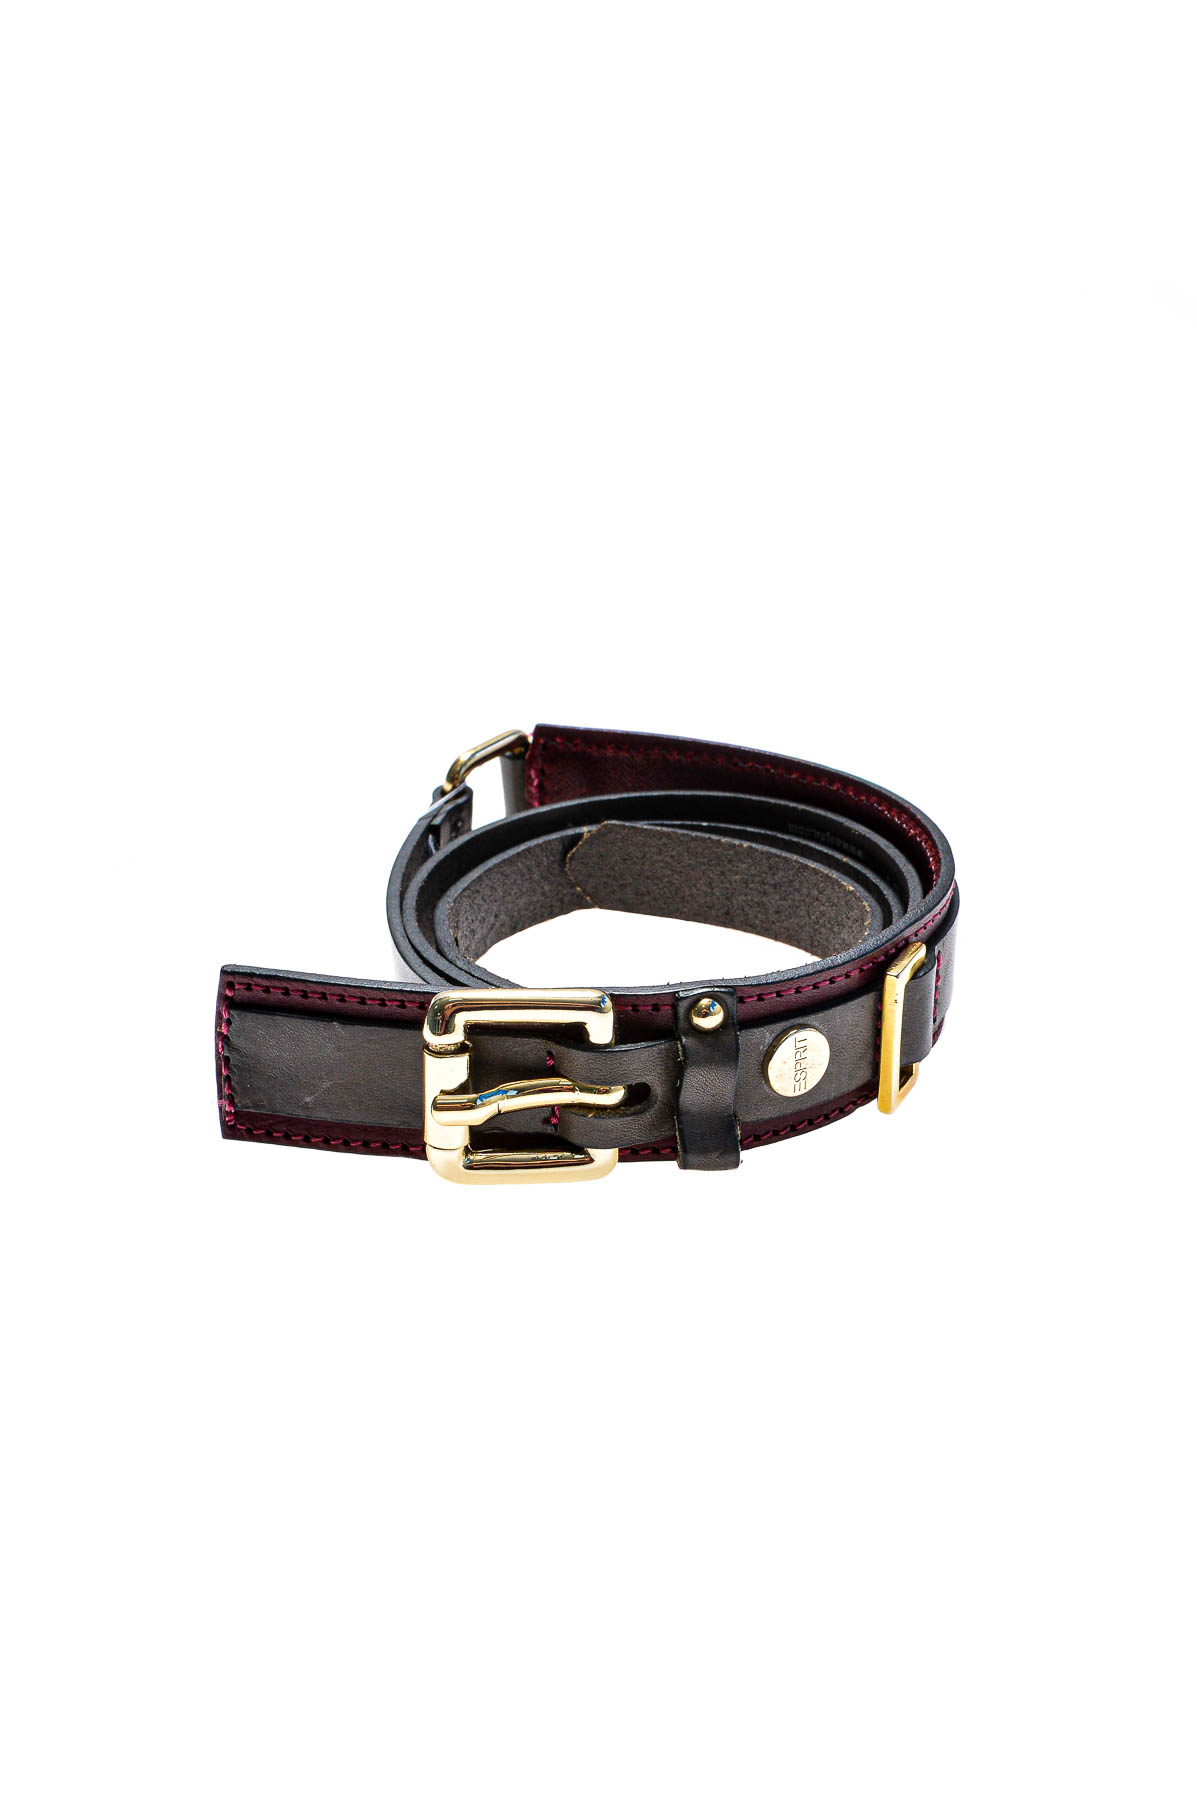 Ladies's belt - ESPRIT - 0